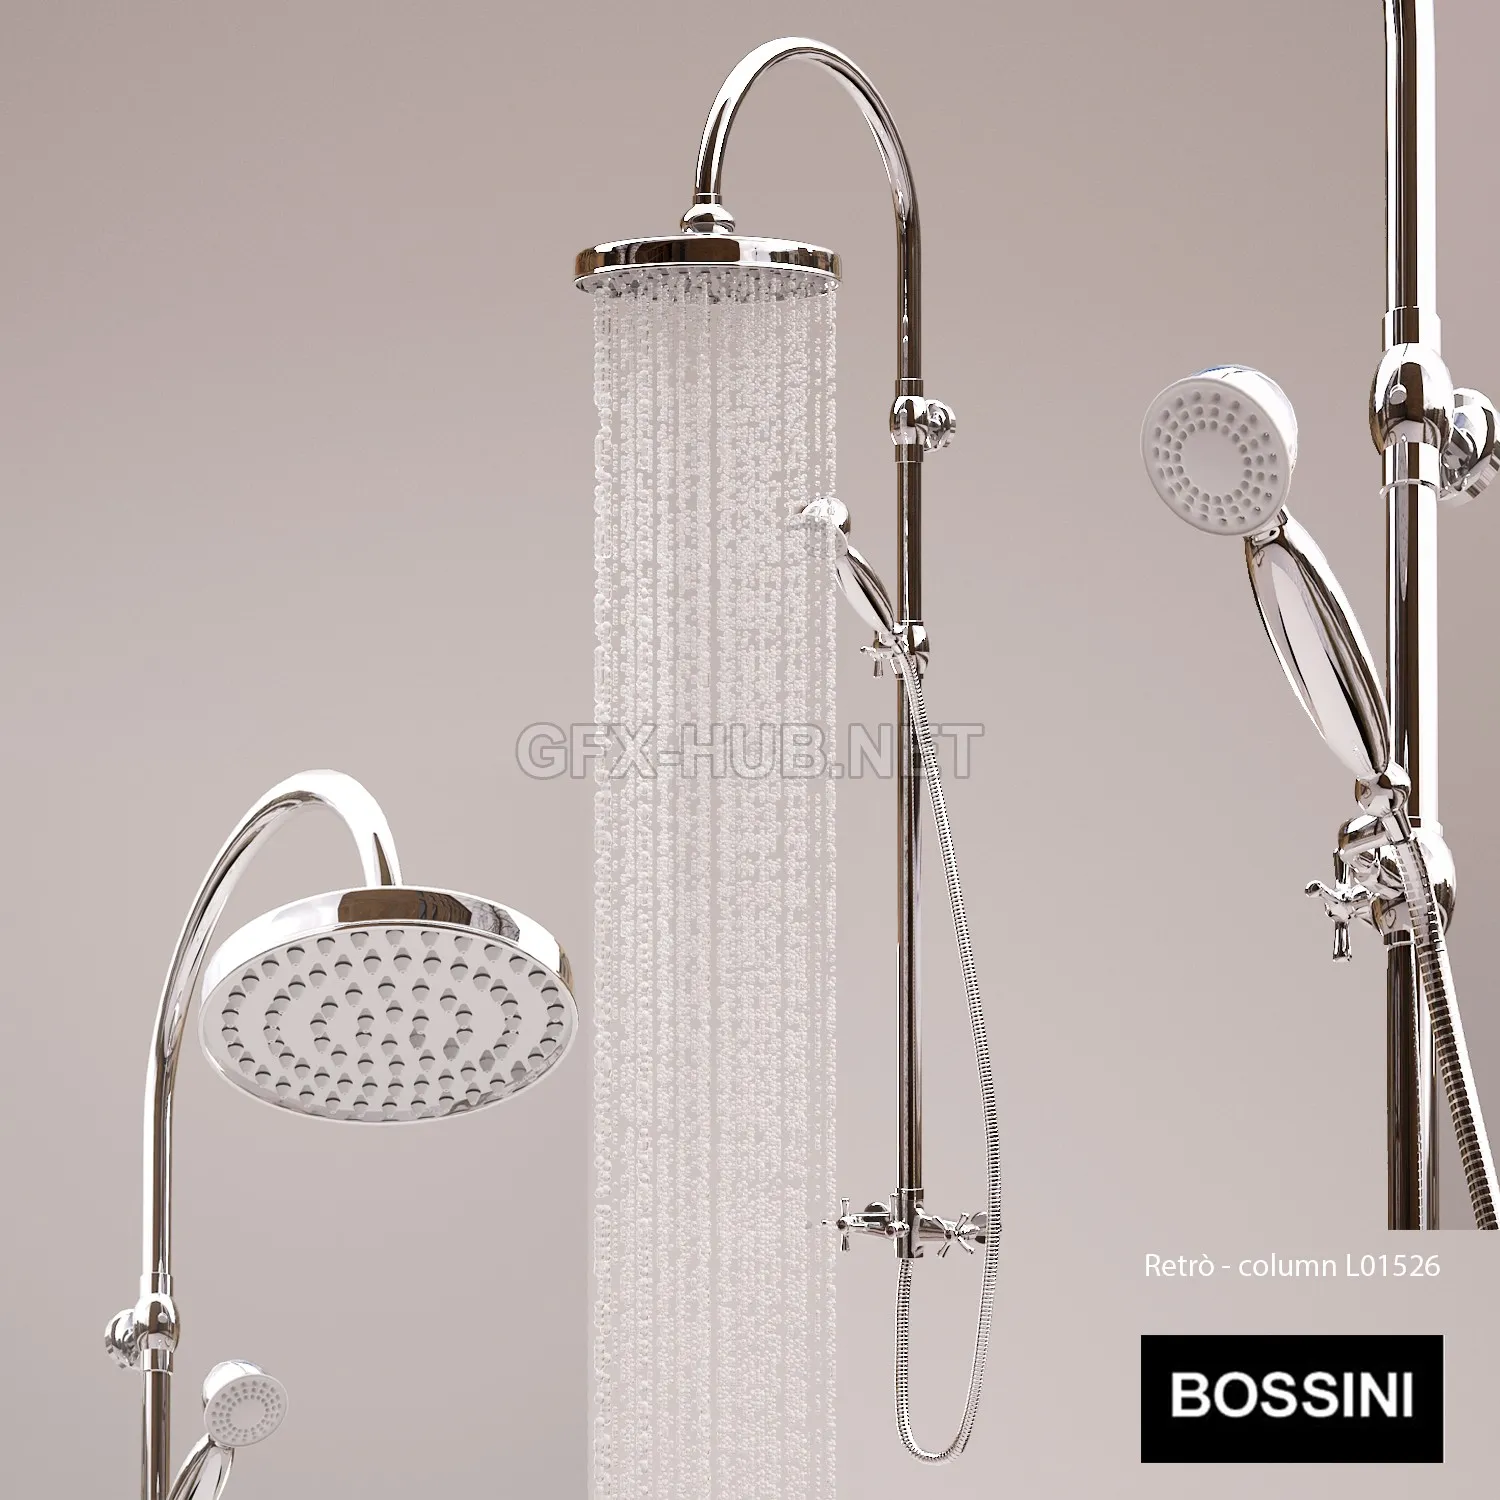 Showerhead Bossini Retro L01526 – 225091